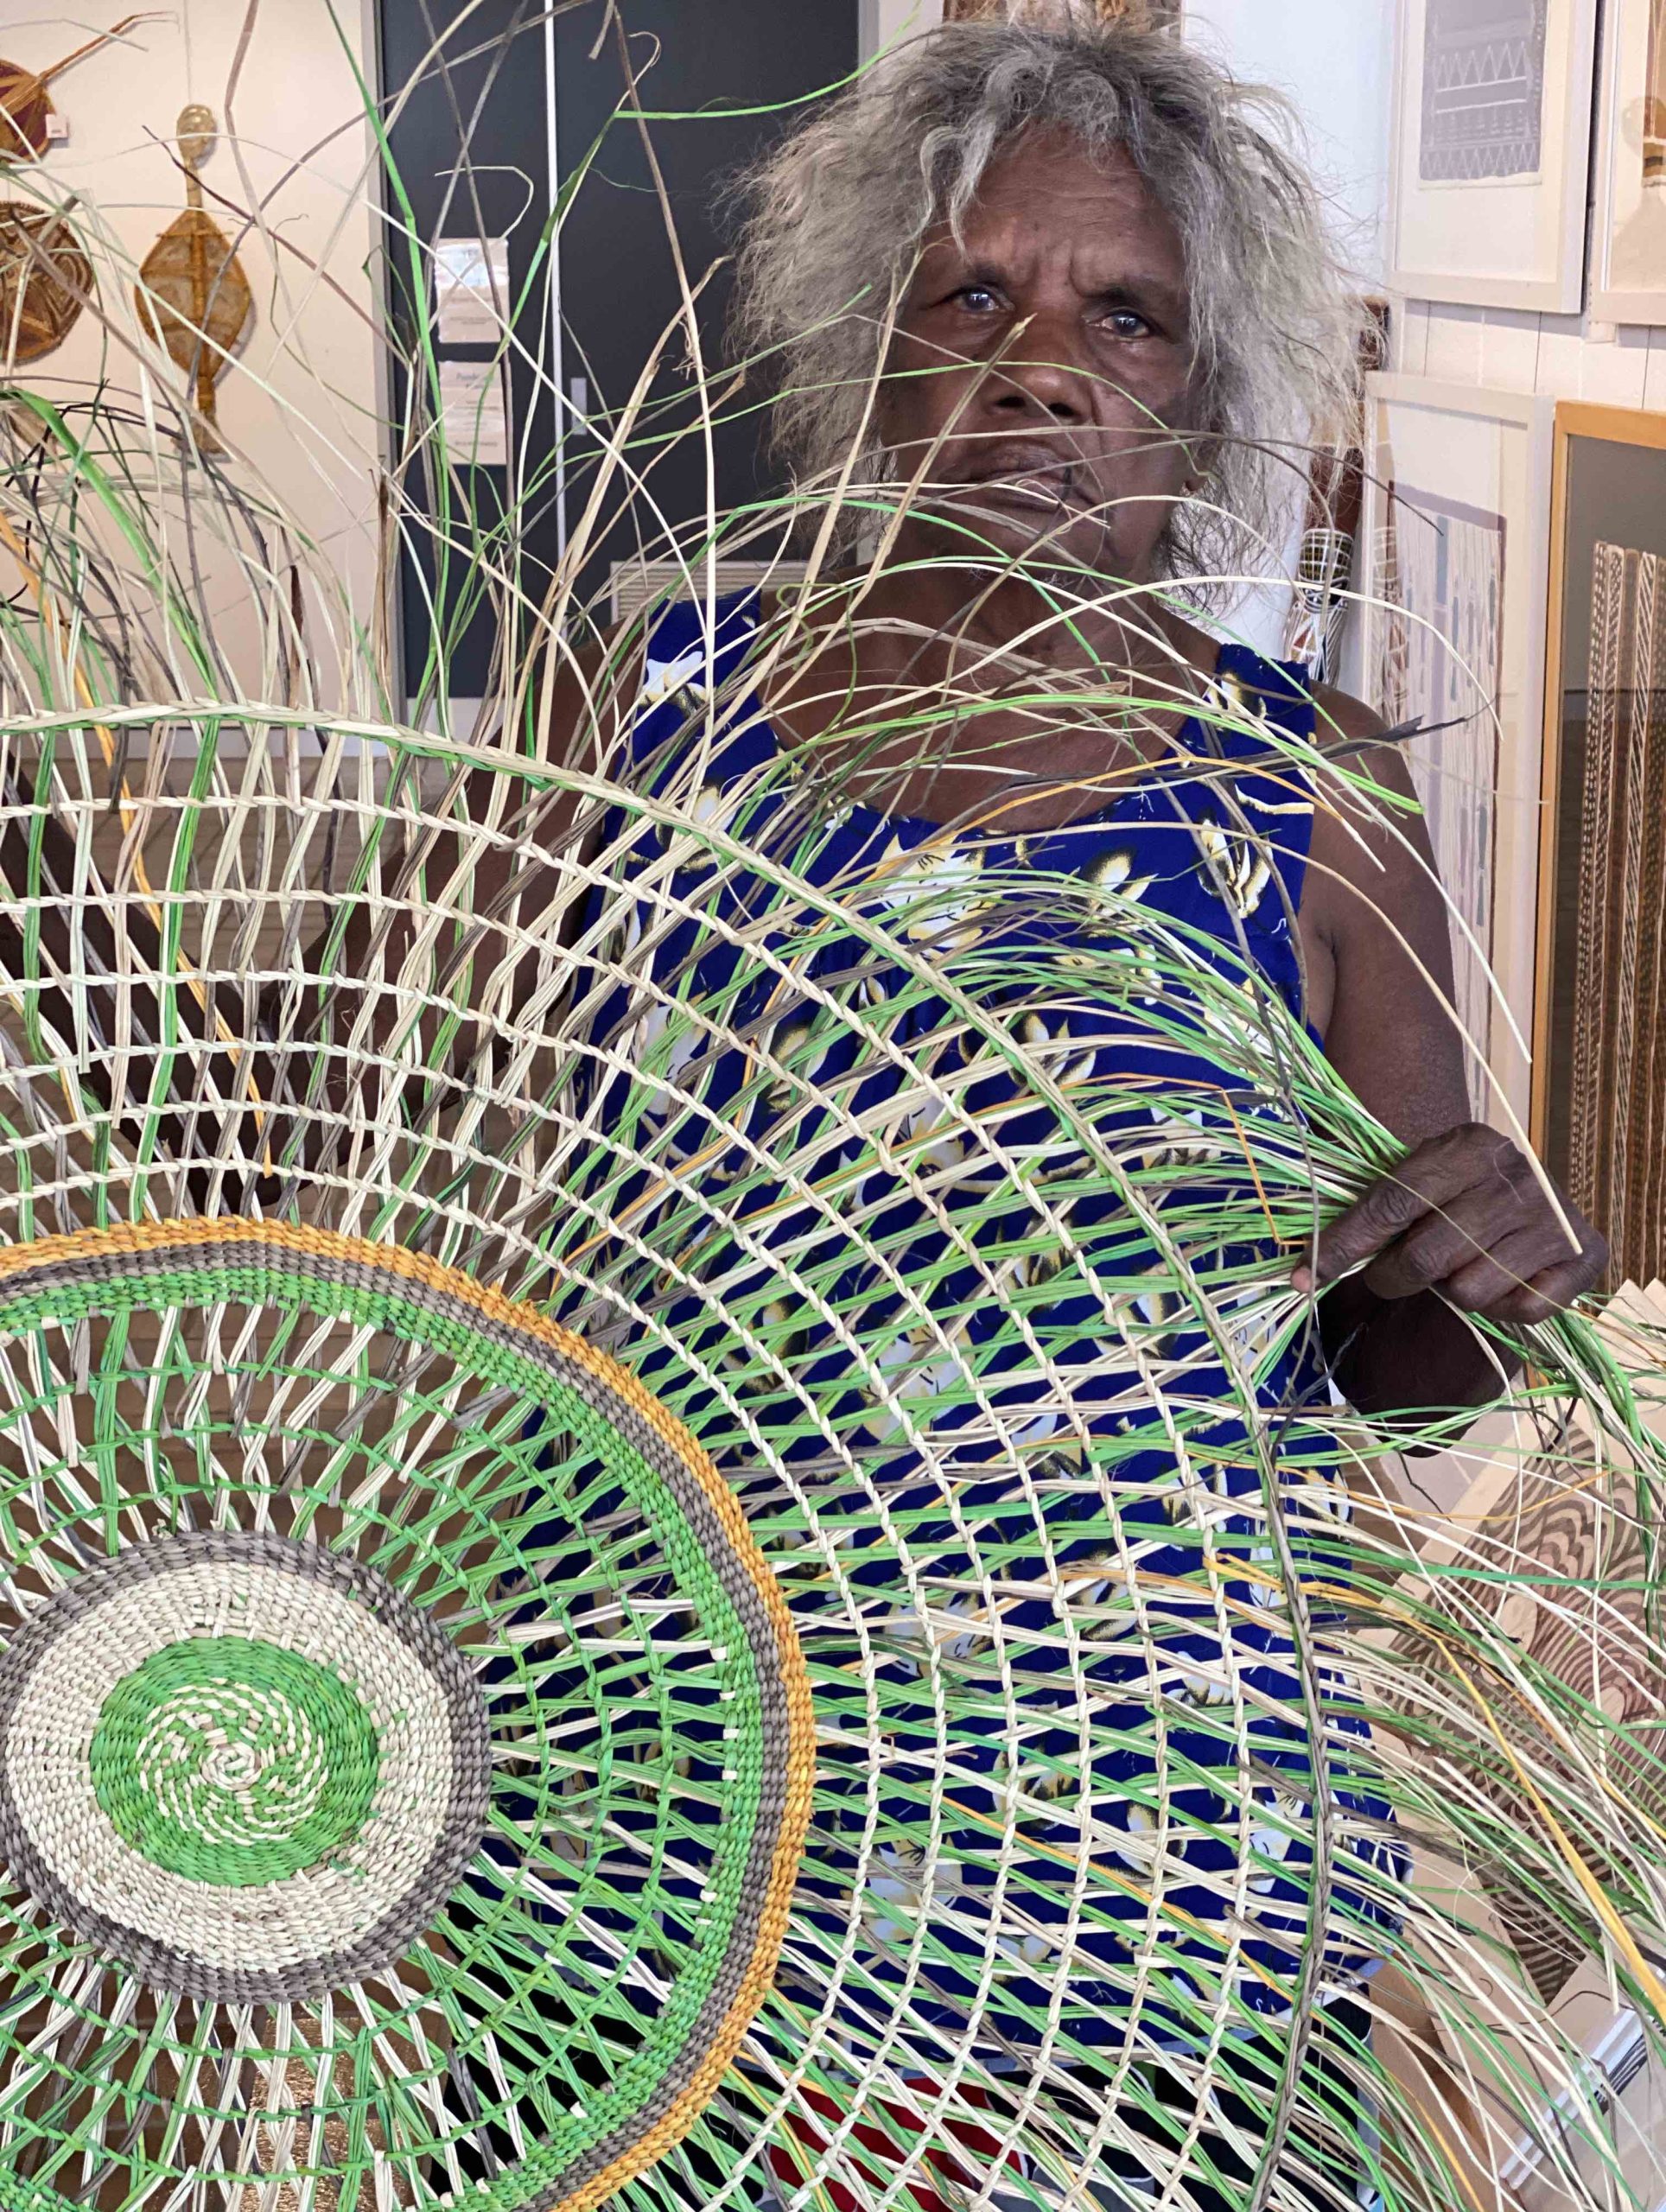 Helen Kamajirr Pandanus mat weaving Arnhem land Songlines Darwin